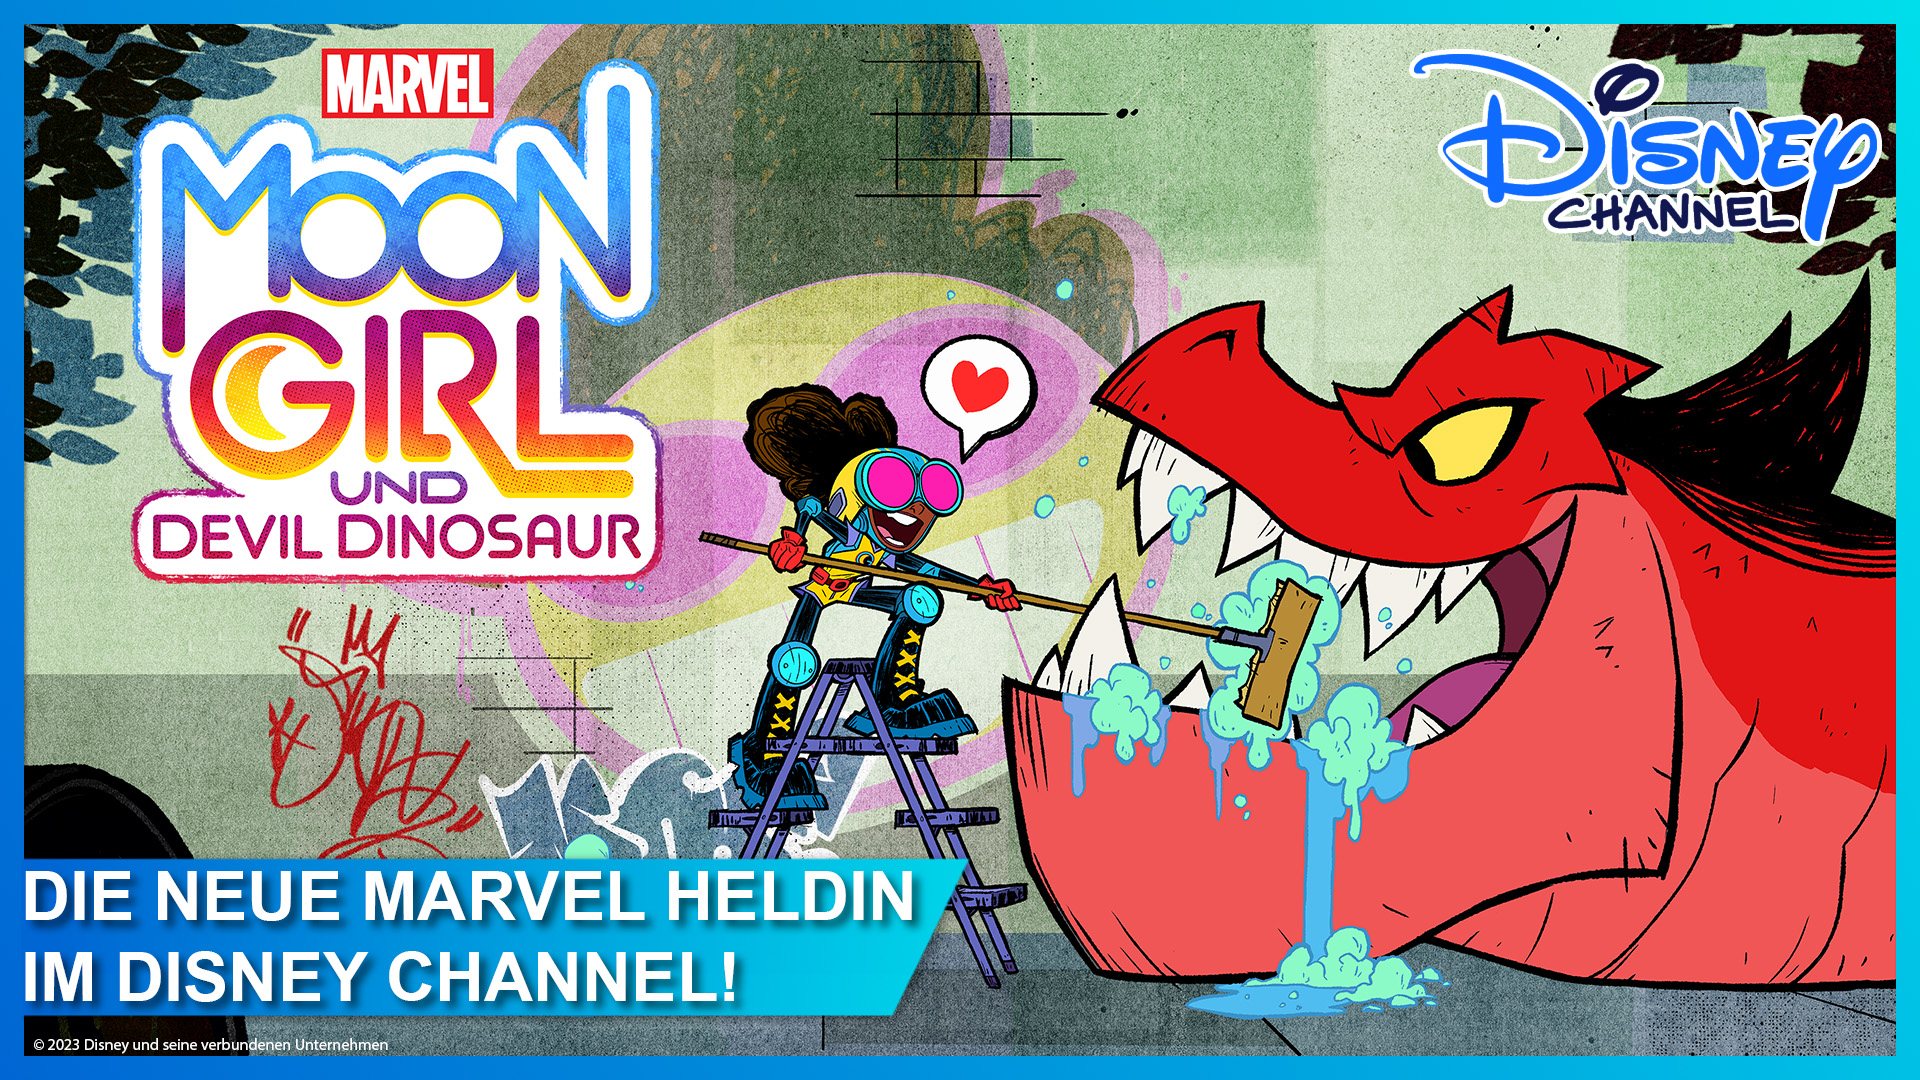 Marvel Moon Girl und Devil Dinosaur startet am 11. März 2023 im Disney Channel + Review und Gewinnspiel zum Serienstart